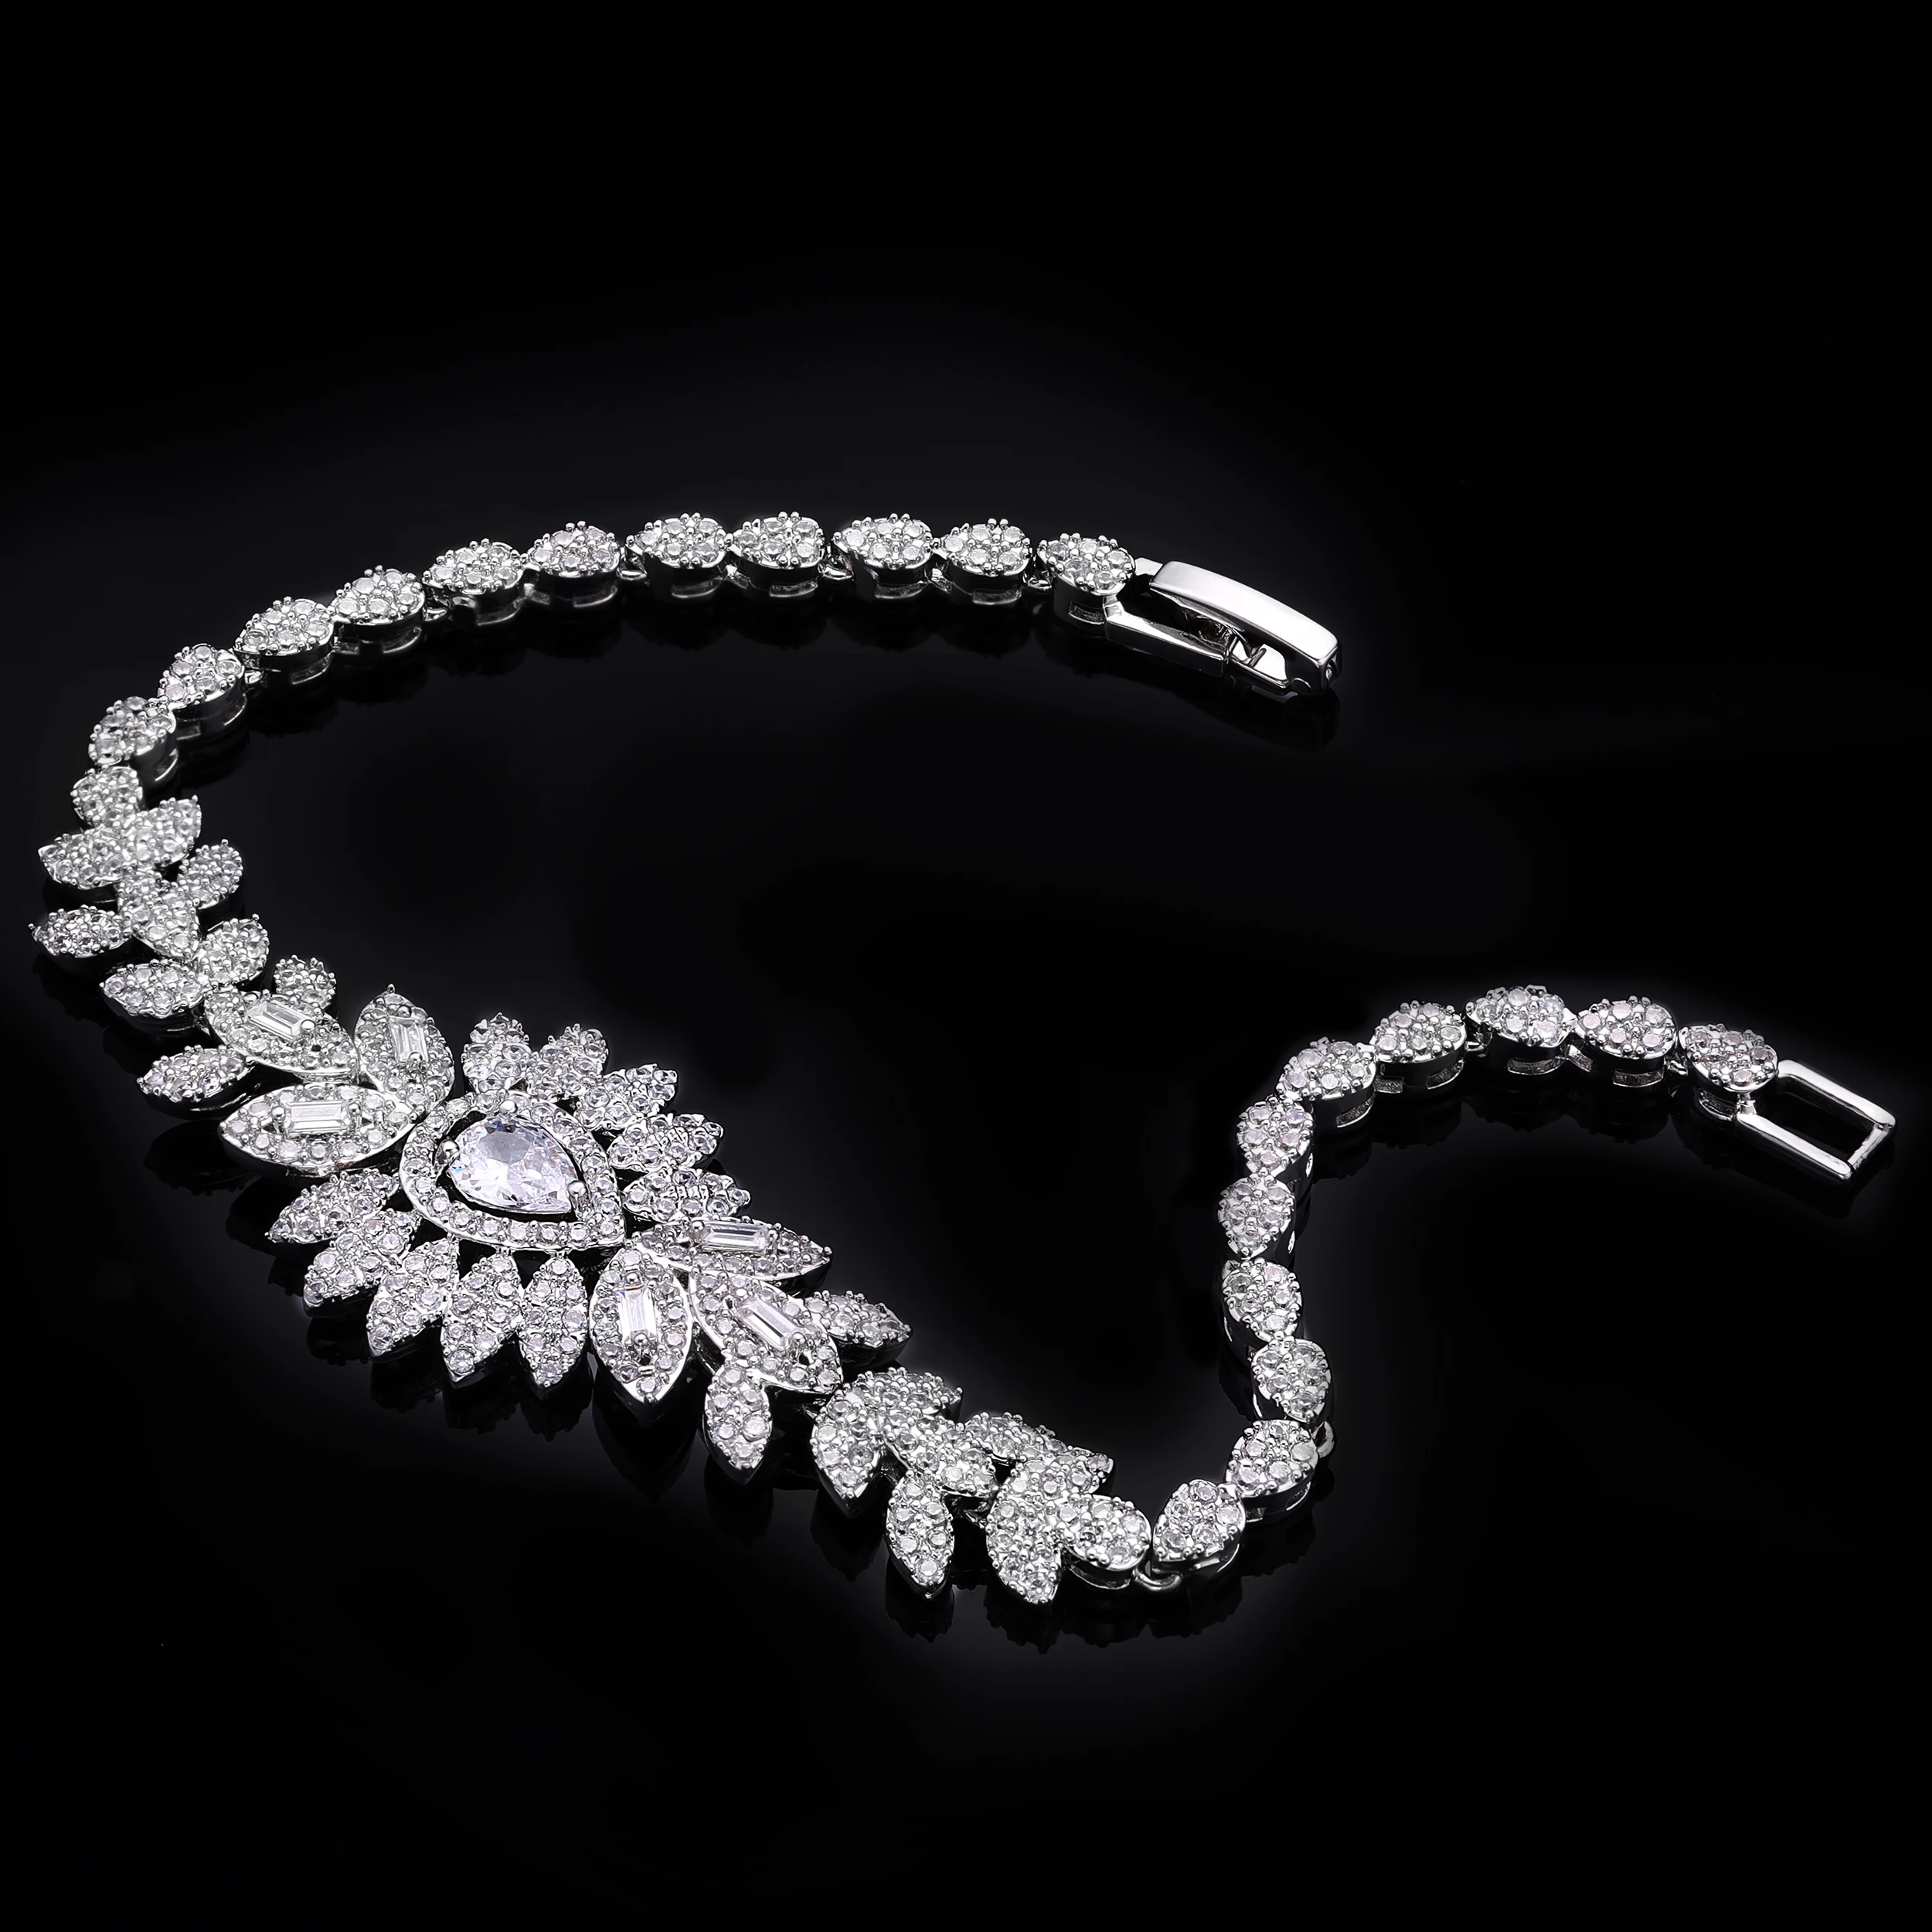 Hotsale African 4pcs Bridal Jewelry Sets New Fashion Dubai Jewelry